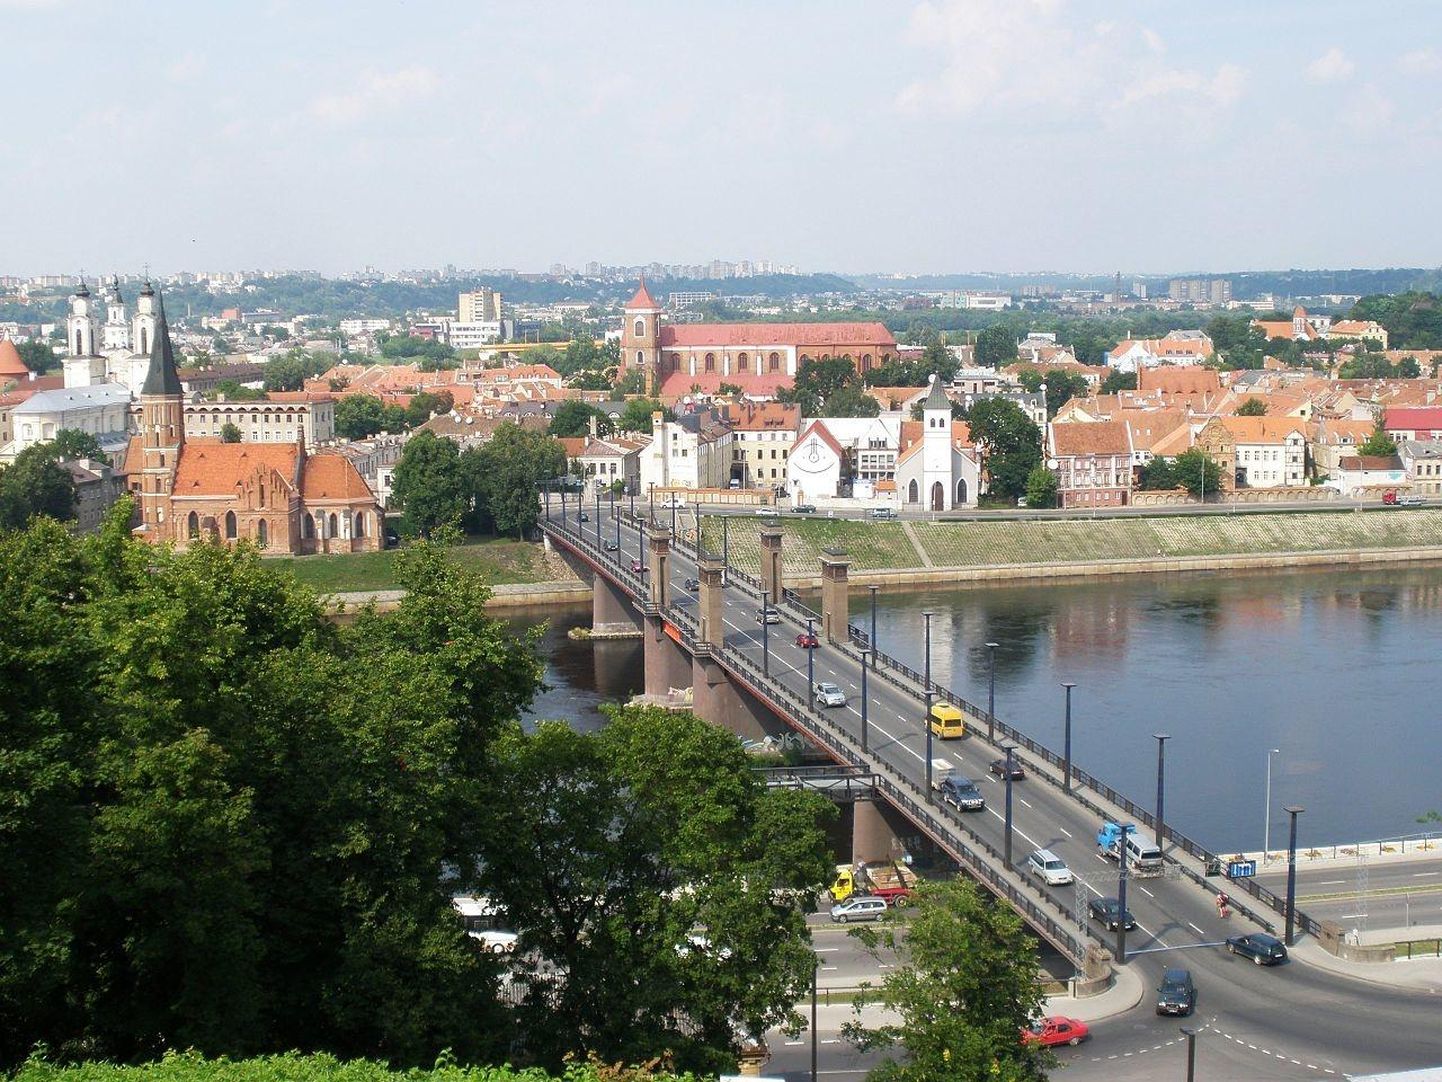 Kaunas on lõpetamas ettevalmistusi oma maailmasõdadevahelise modernistliku arhitektuuri kandmiseks UNESCO maailmapärandi nimistusse.